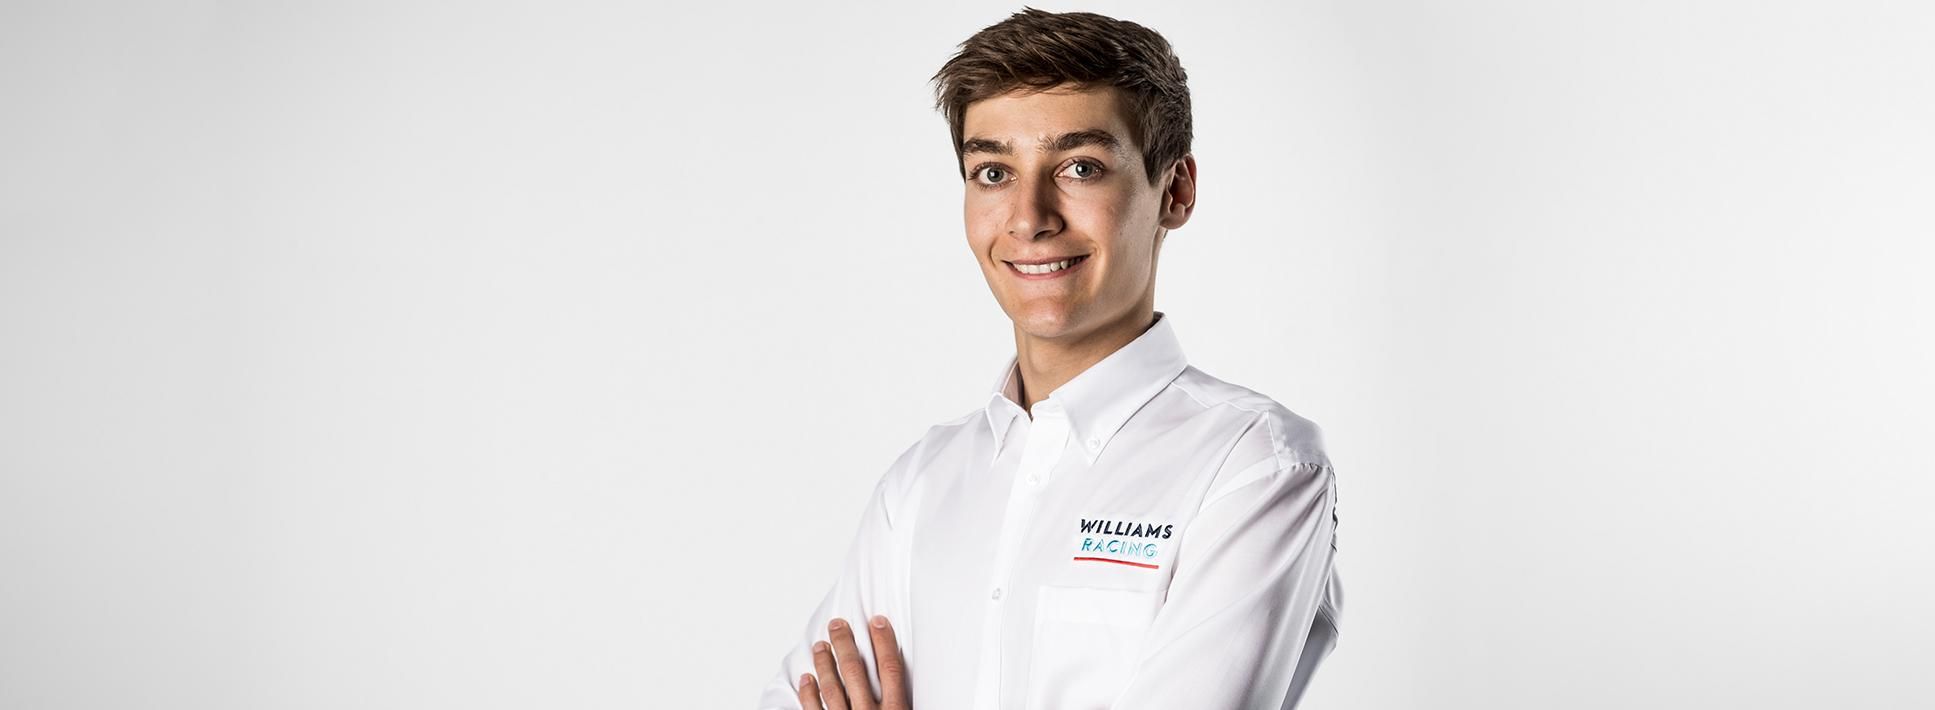 За Williams в Формуле-1 в 2019 году будет выступать юный новичок